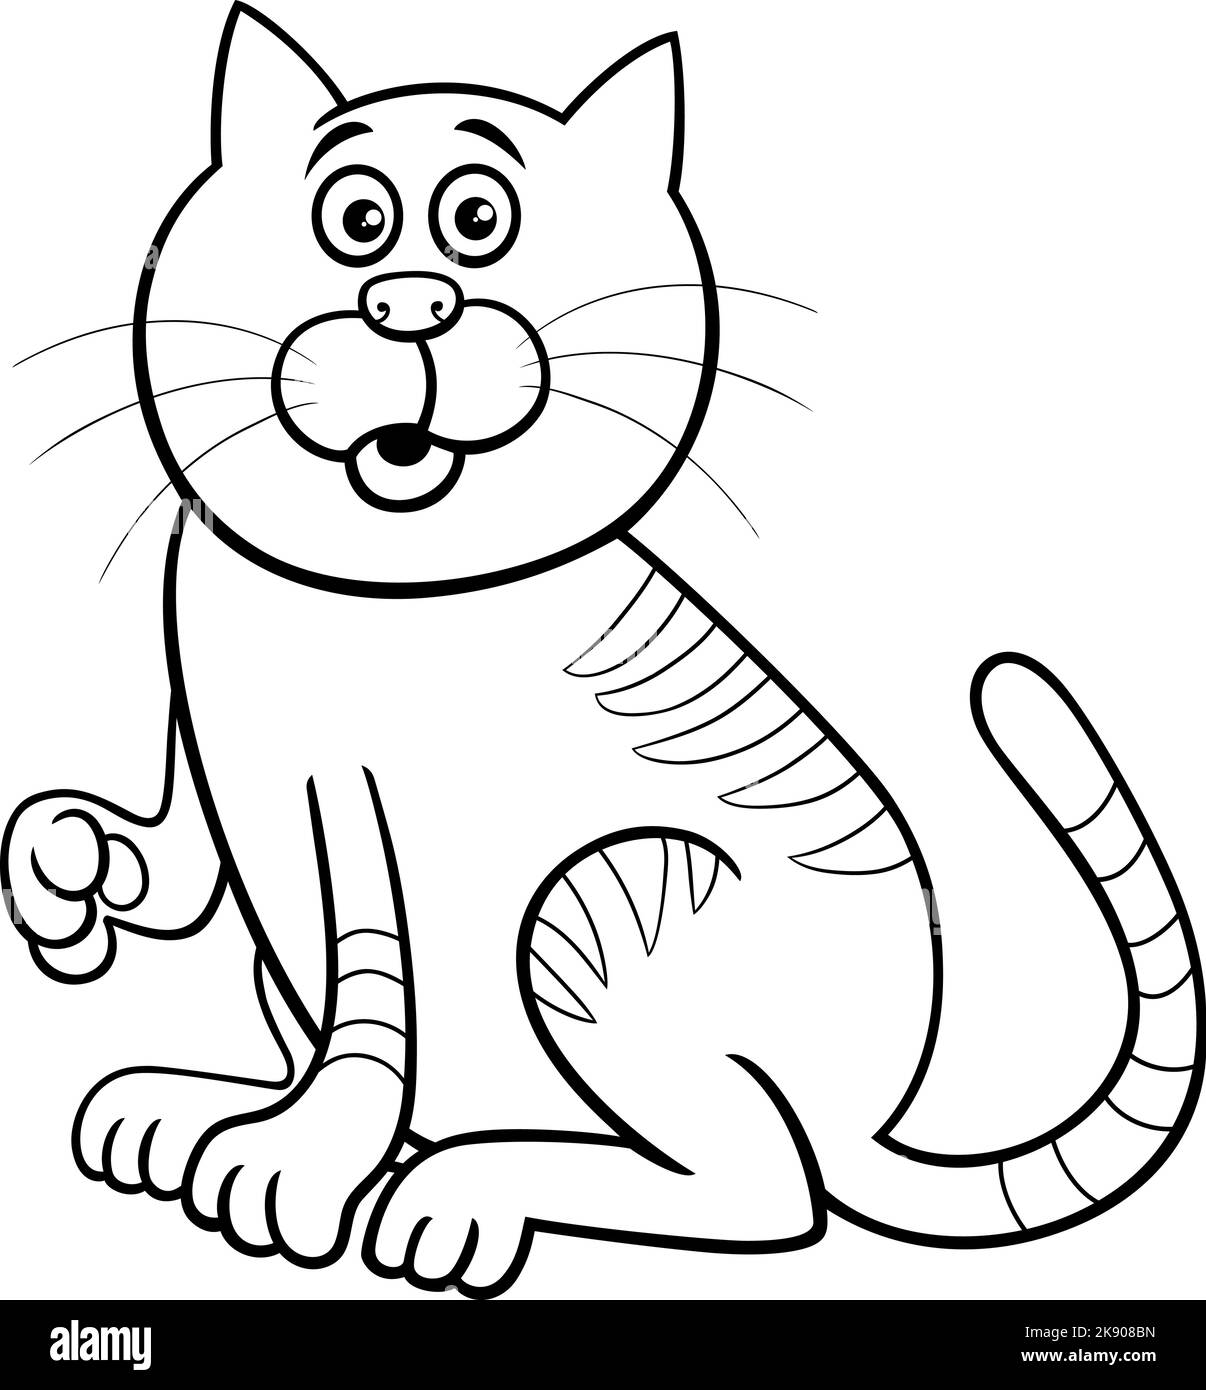 Dessin animé noir et blanc illustration de la page de coloriage de personnage d'animal de bande dessinée de chat surpris Illustration de Vecteur